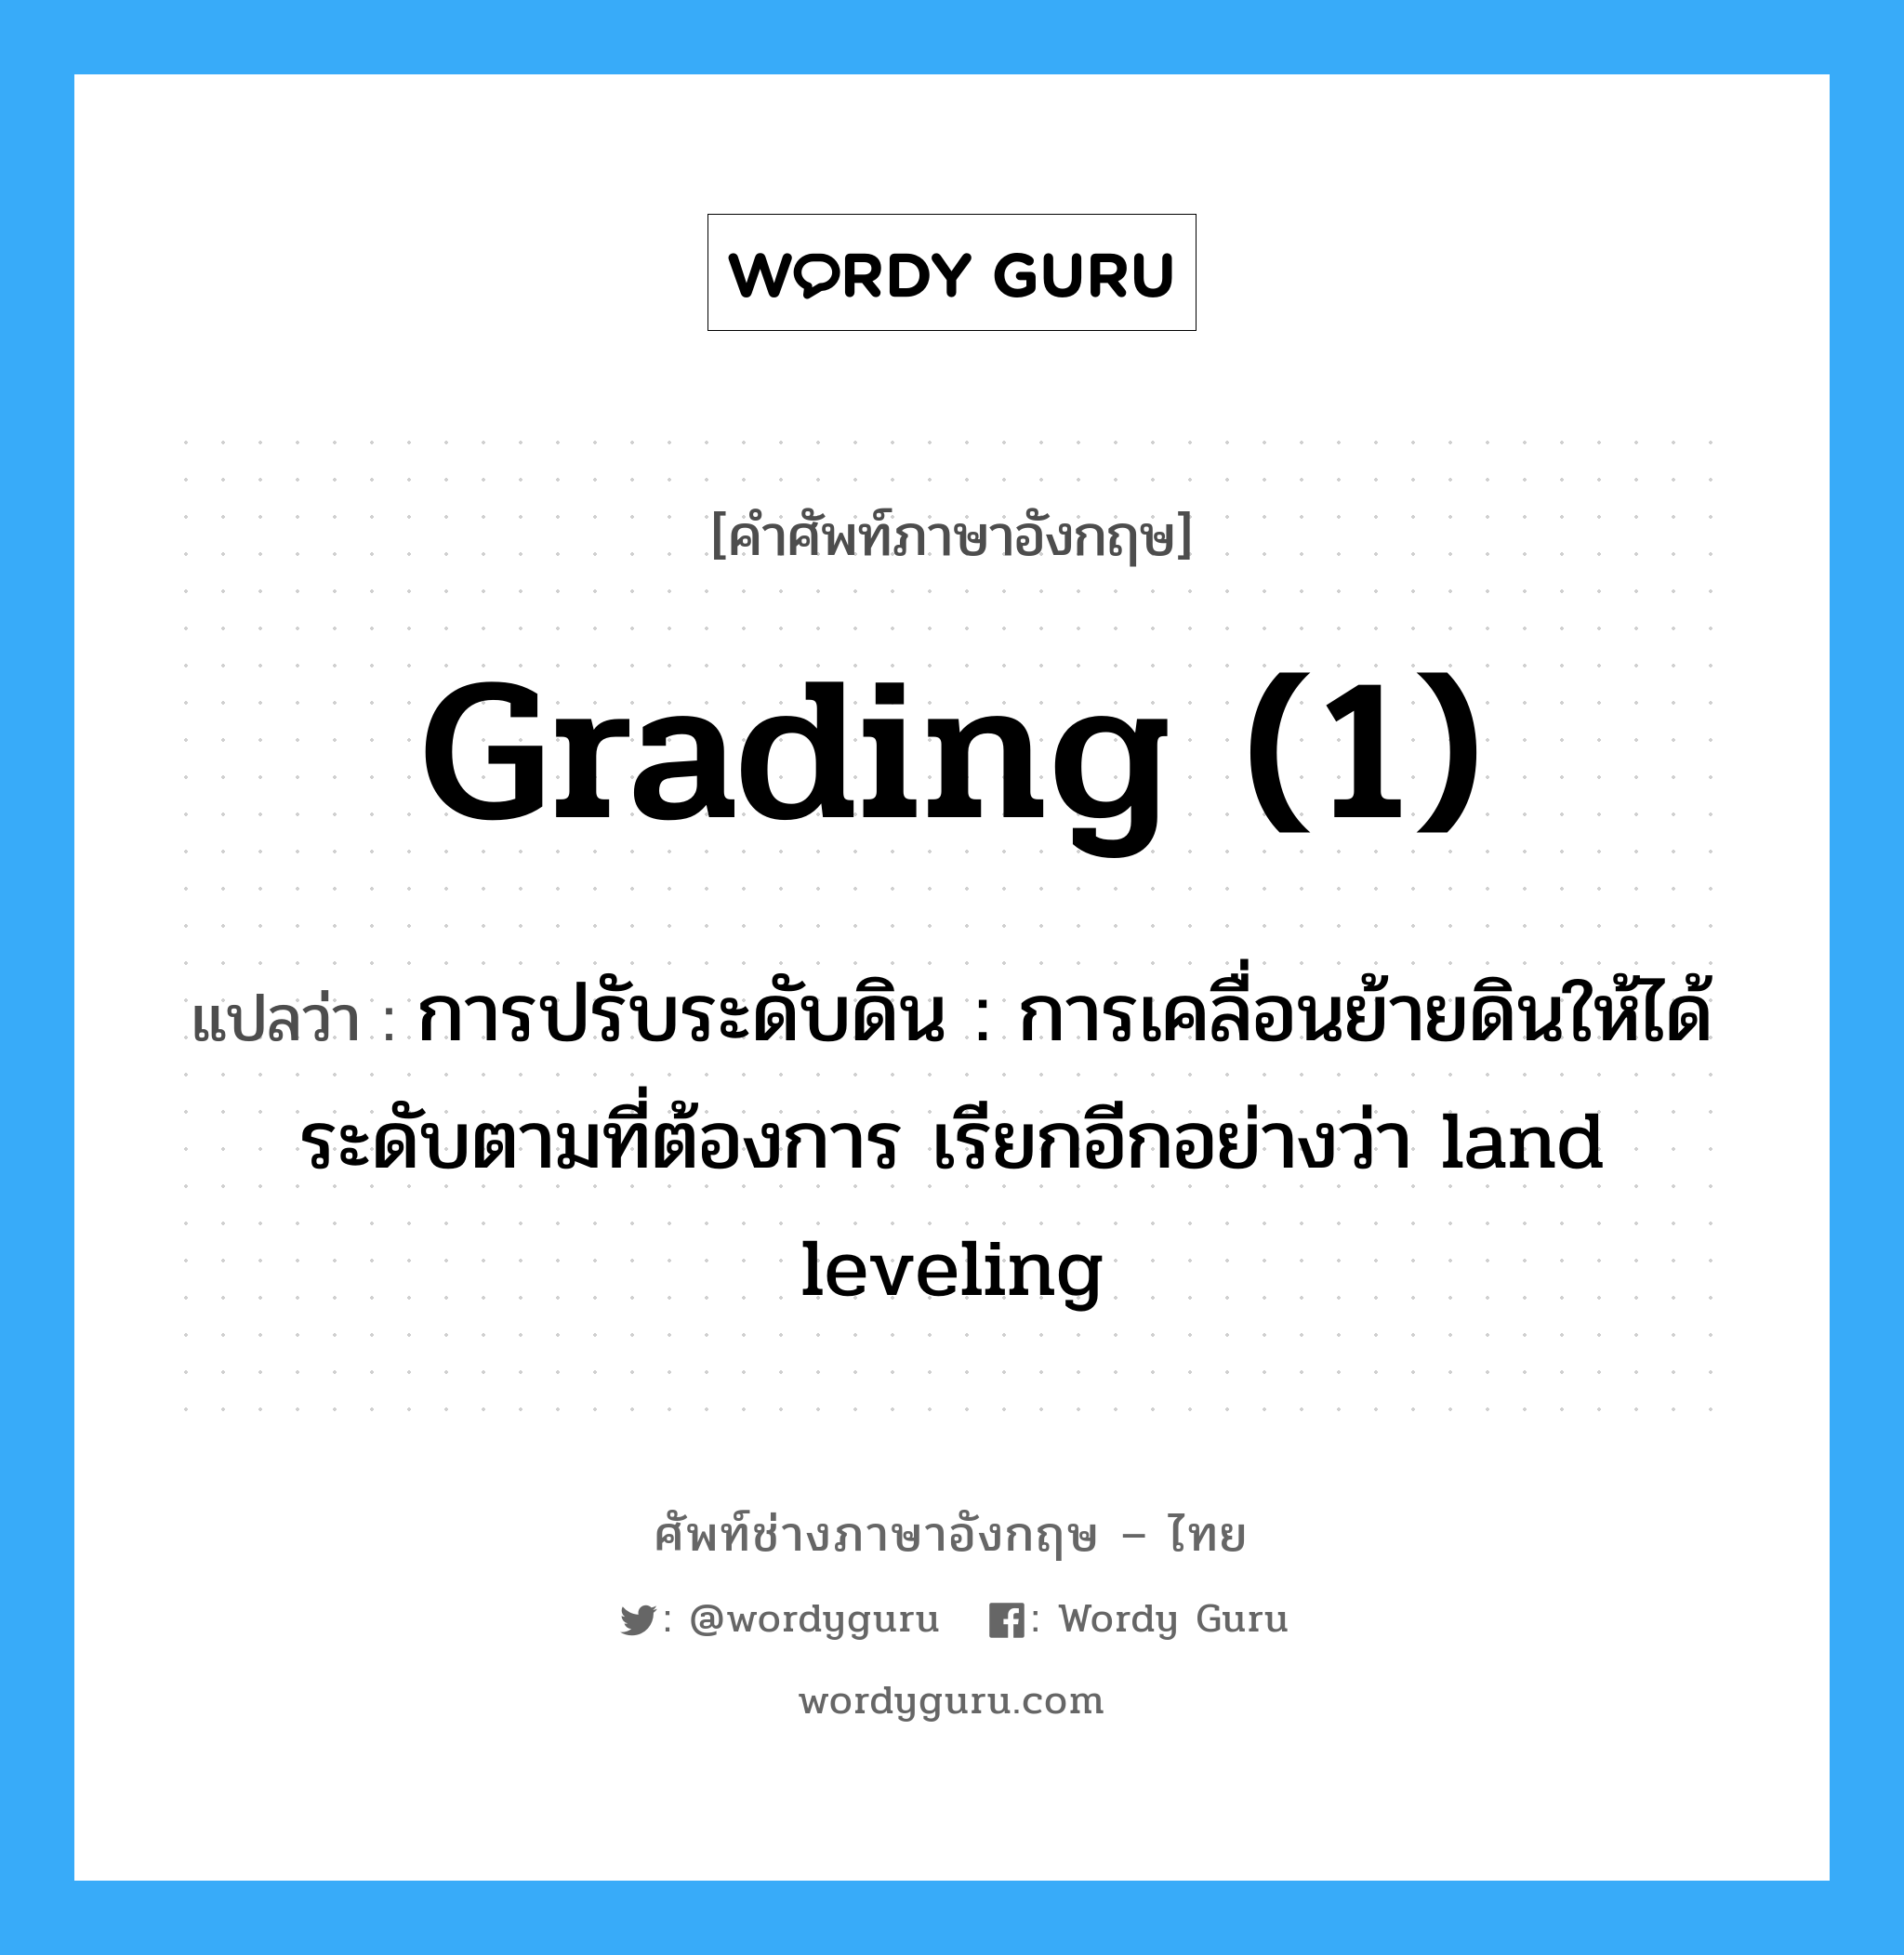 grading (1) แปลว่า?, คำศัพท์ช่างภาษาอังกฤษ - ไทย grading (1) คำศัพท์ภาษาอังกฤษ grading (1) แปลว่า การปรับระดับดิน : การเคลื่อนย้ายดินให้ได้ระดับตามที่ต้องการ เรียกอีกอย่างว่า land leveling